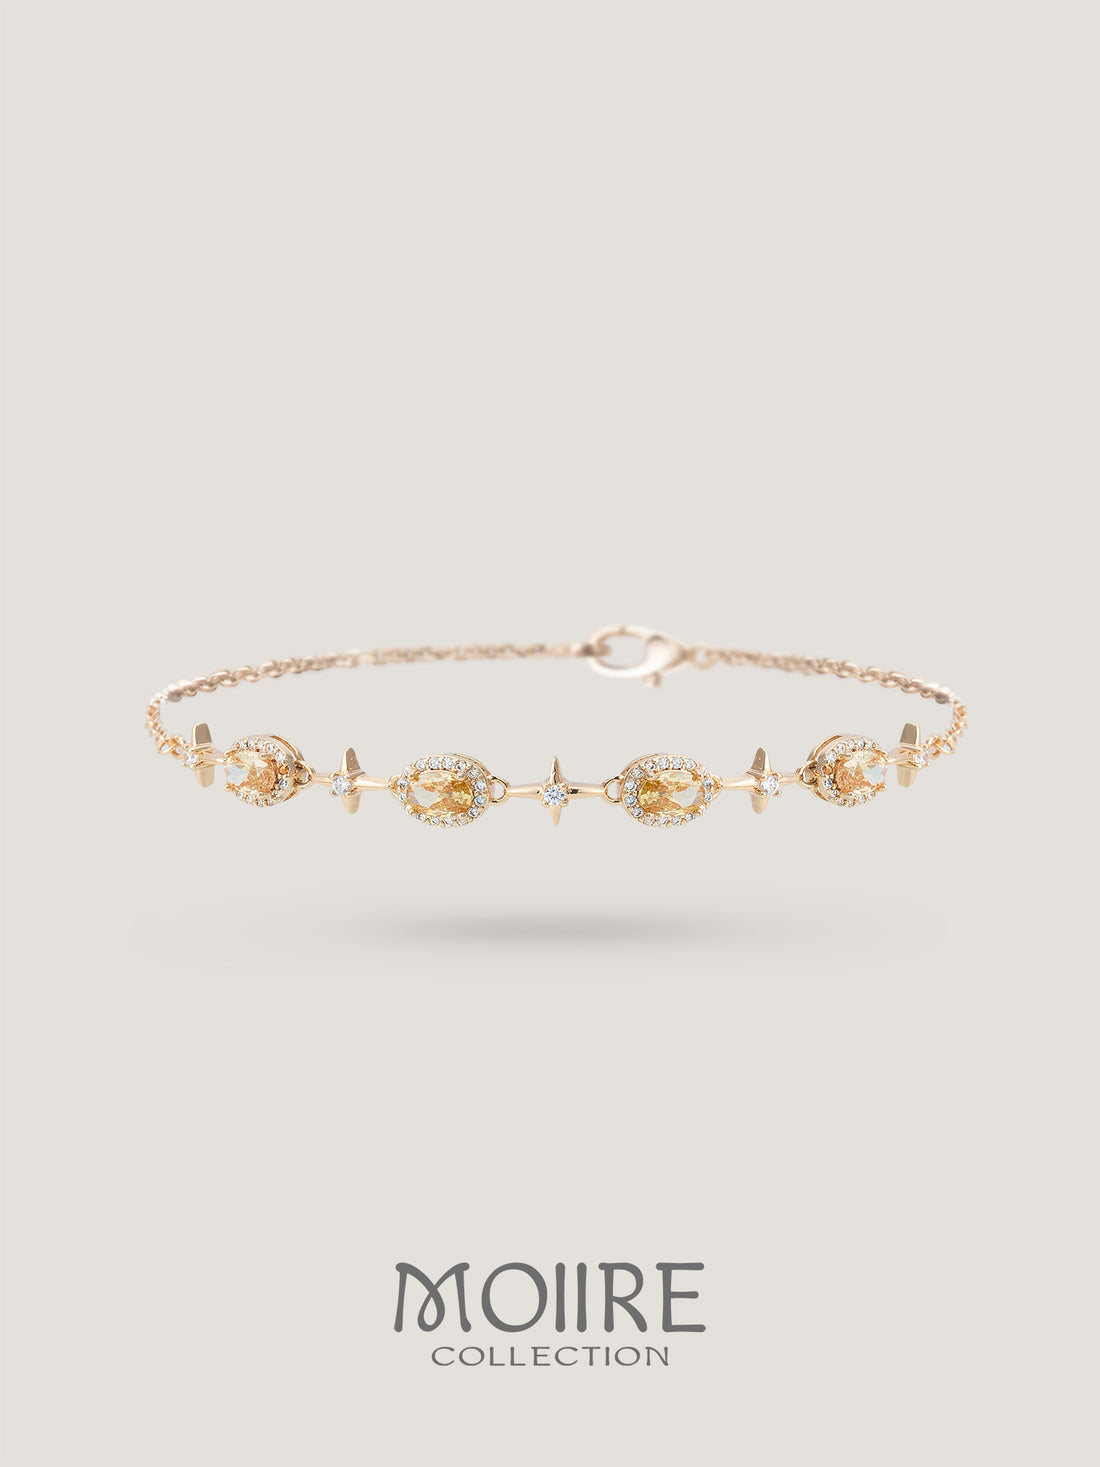 Moiire Jewelry | 秘境玫瑰